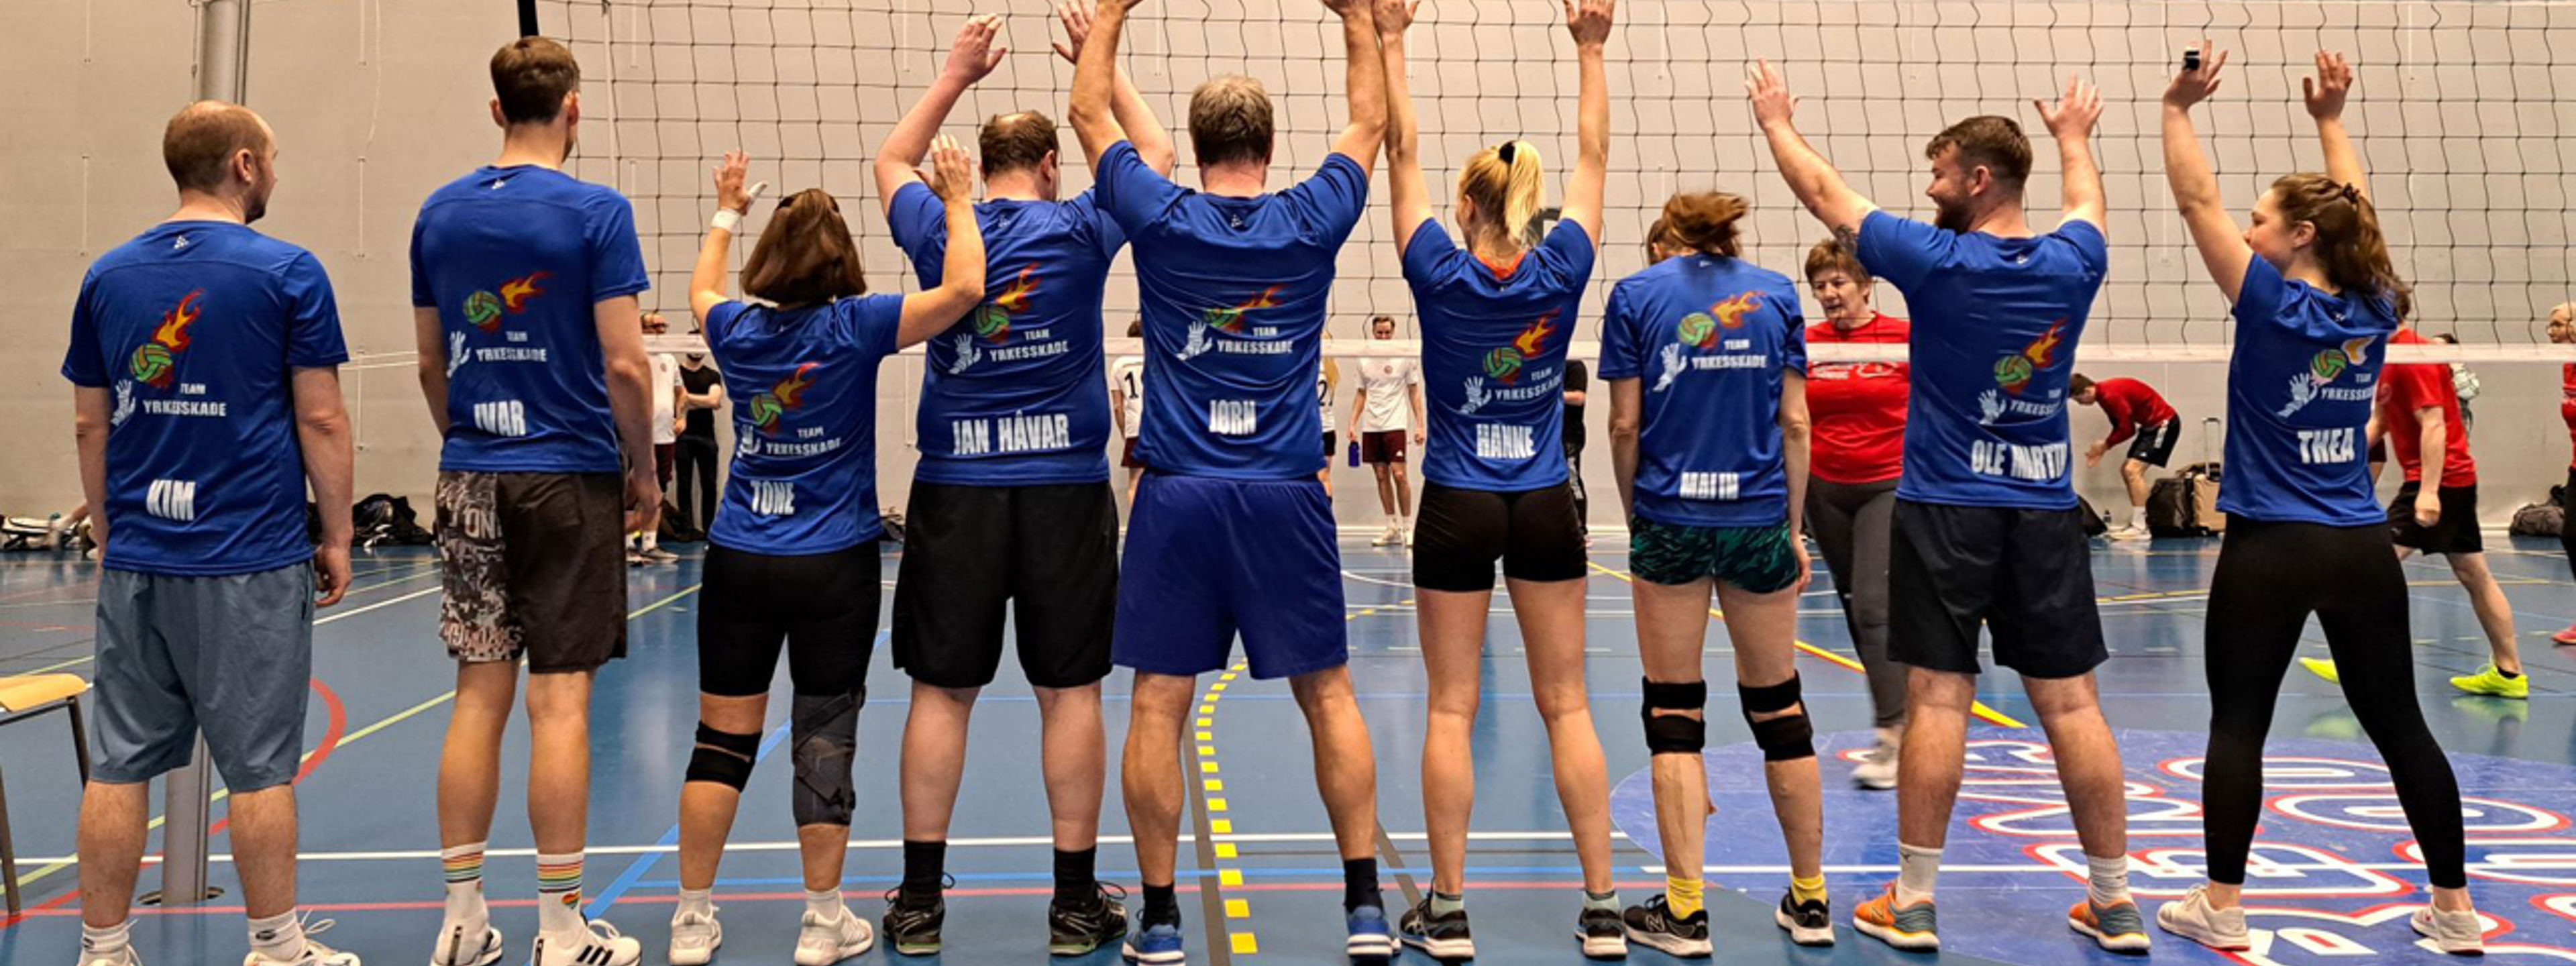 9 volleyball spelarar står med ryggen til og vi ser like drakter.